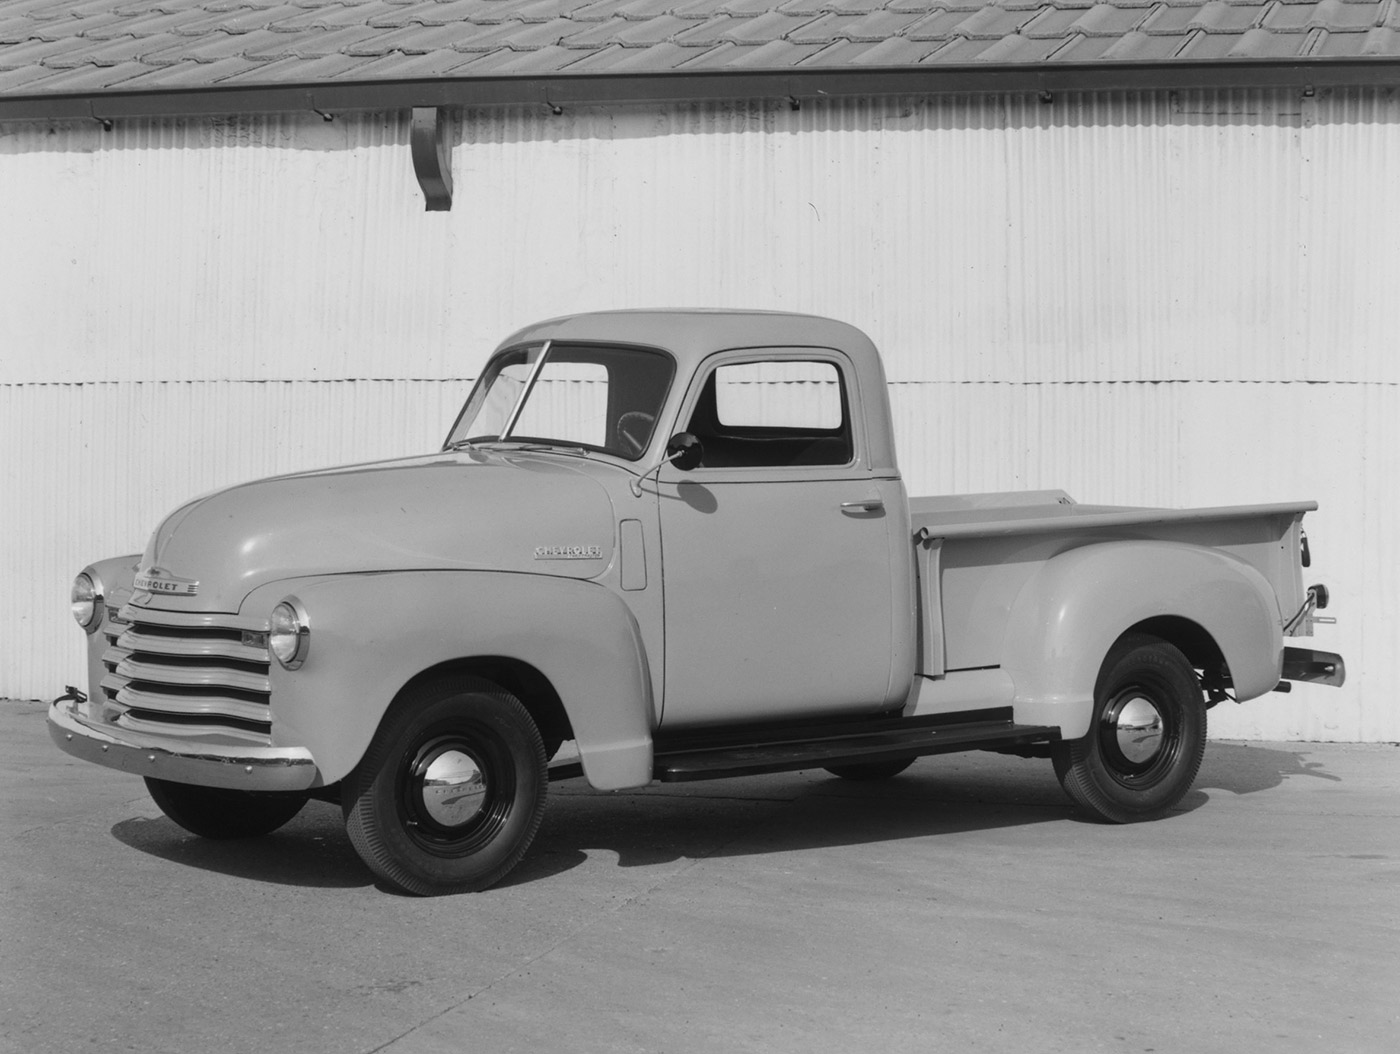 Tìm hiểu lịch sử dòng xe bán tải Chevrolet advance-design-series-1947-55.jpg